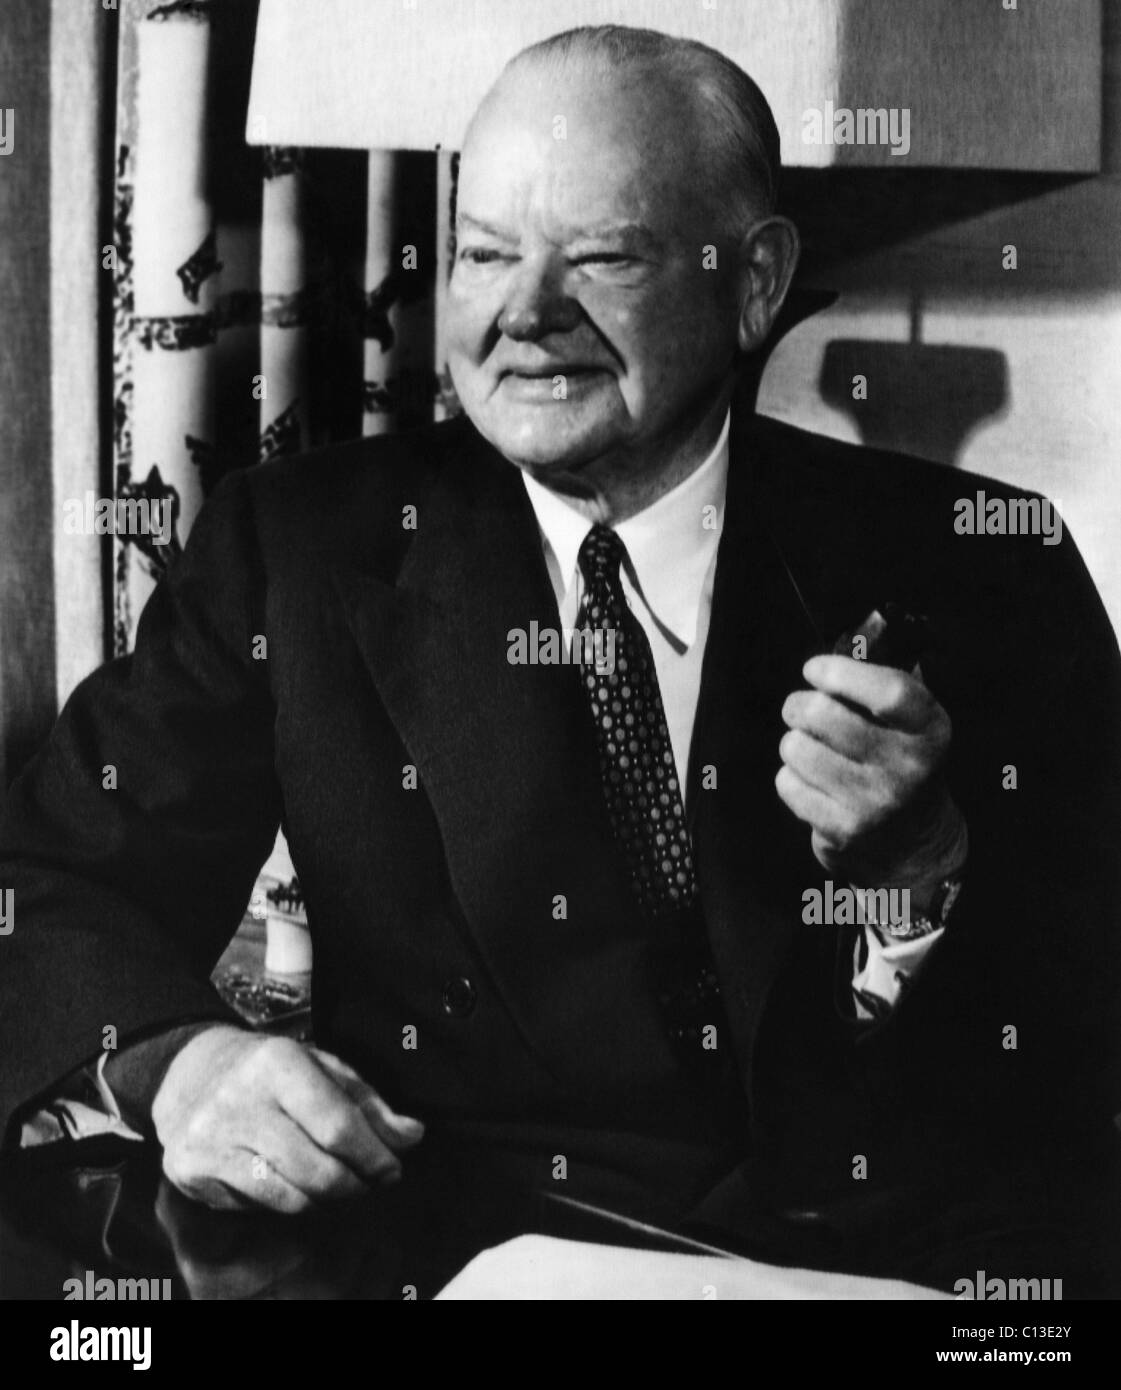 Der ehemalige Präsident Herbert Hoover (1874-1964), US-Präsident 1929-1933, an seinem Schreibtisch in seiner Suite im Mark Hopkins Hotel, San Francisco, Kalifornien, 9. August 1956. Stockfoto